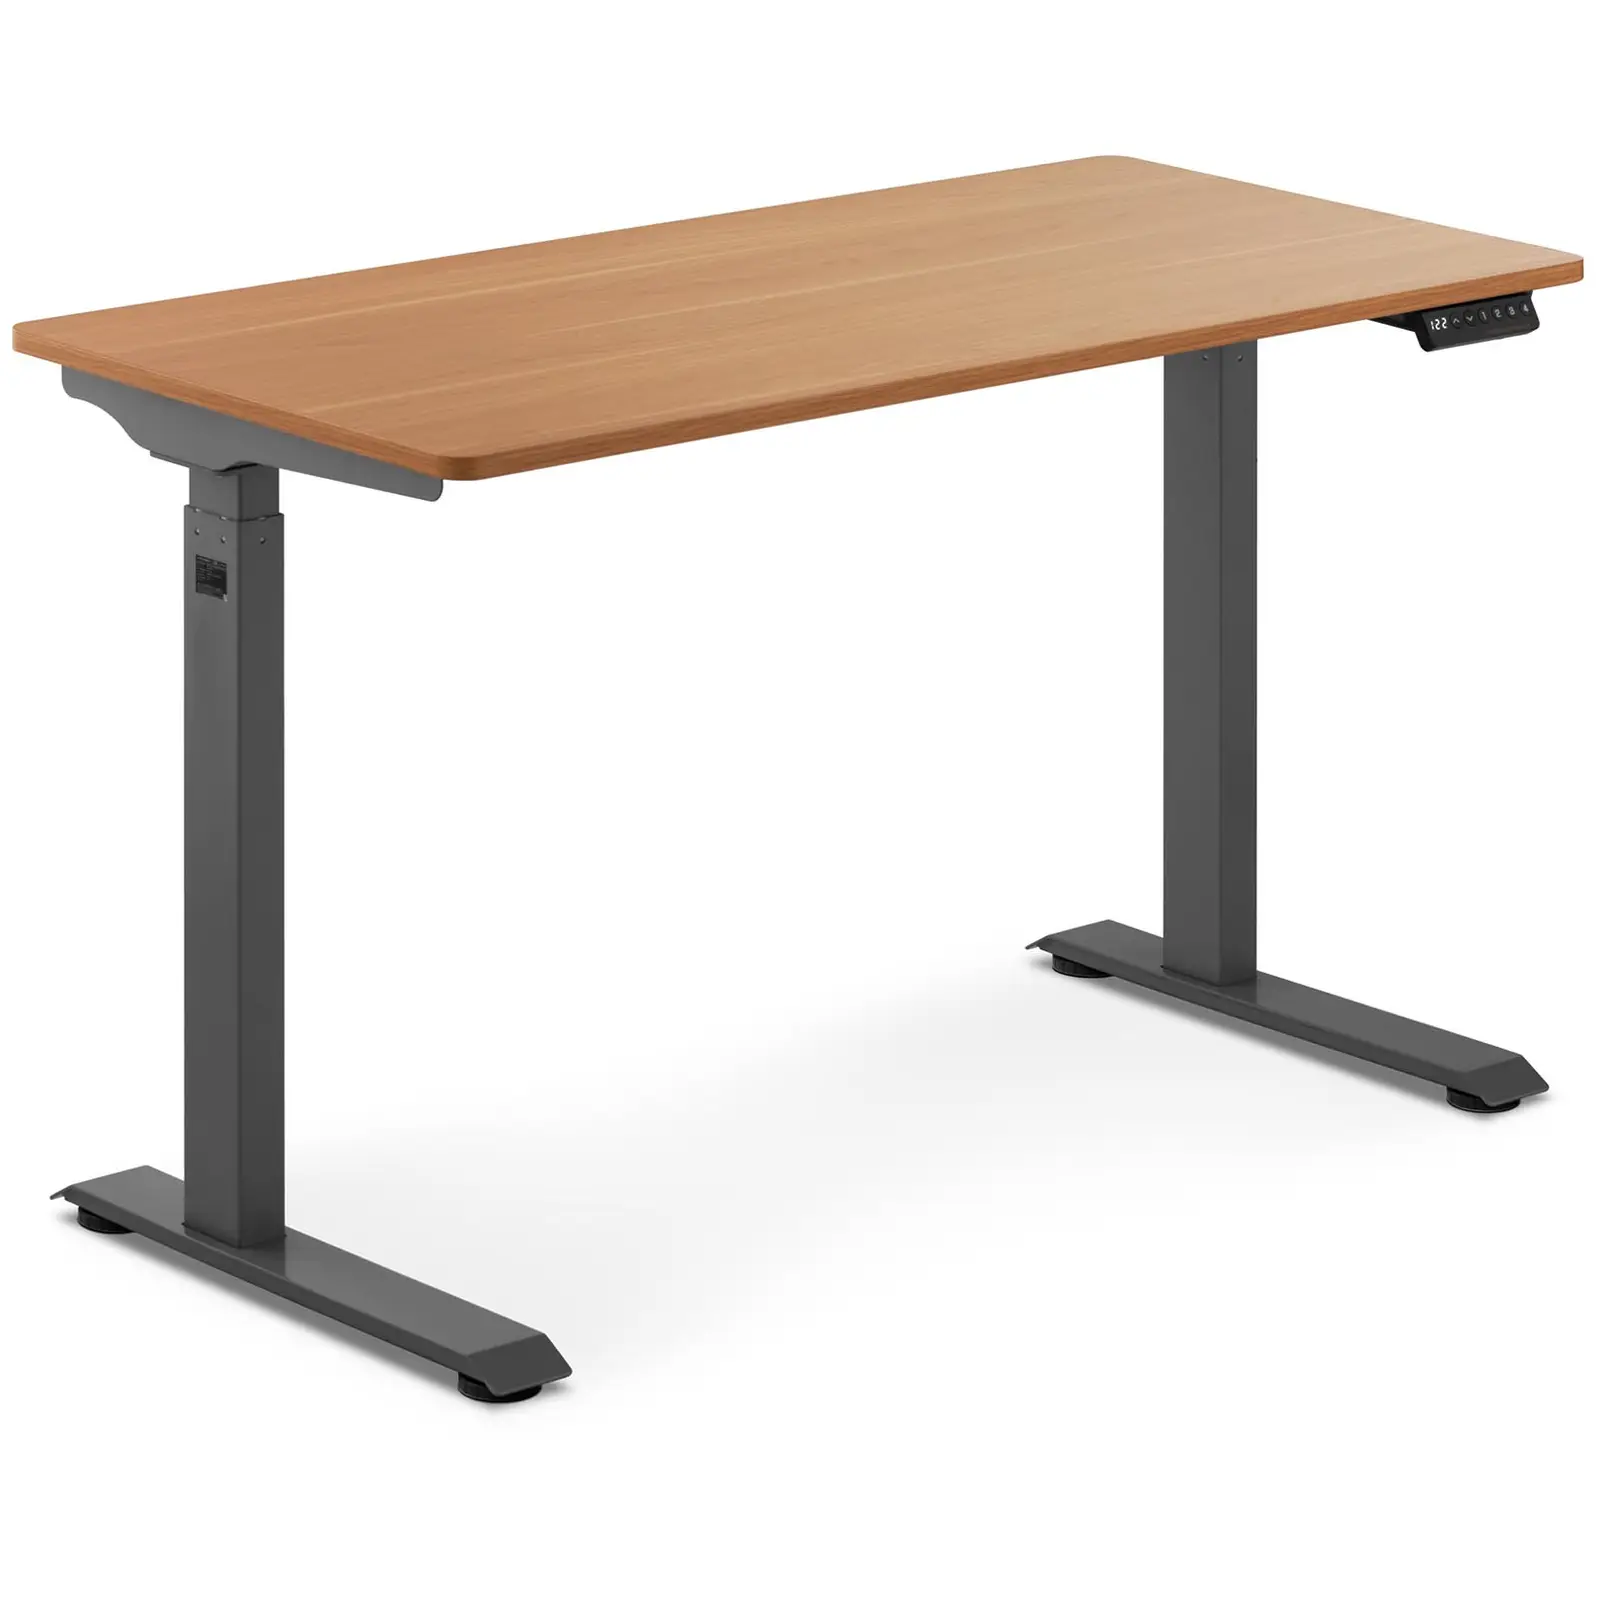 Állítható magasságú íróasztal - 90 W - 730–1233 mm - barna/szürke